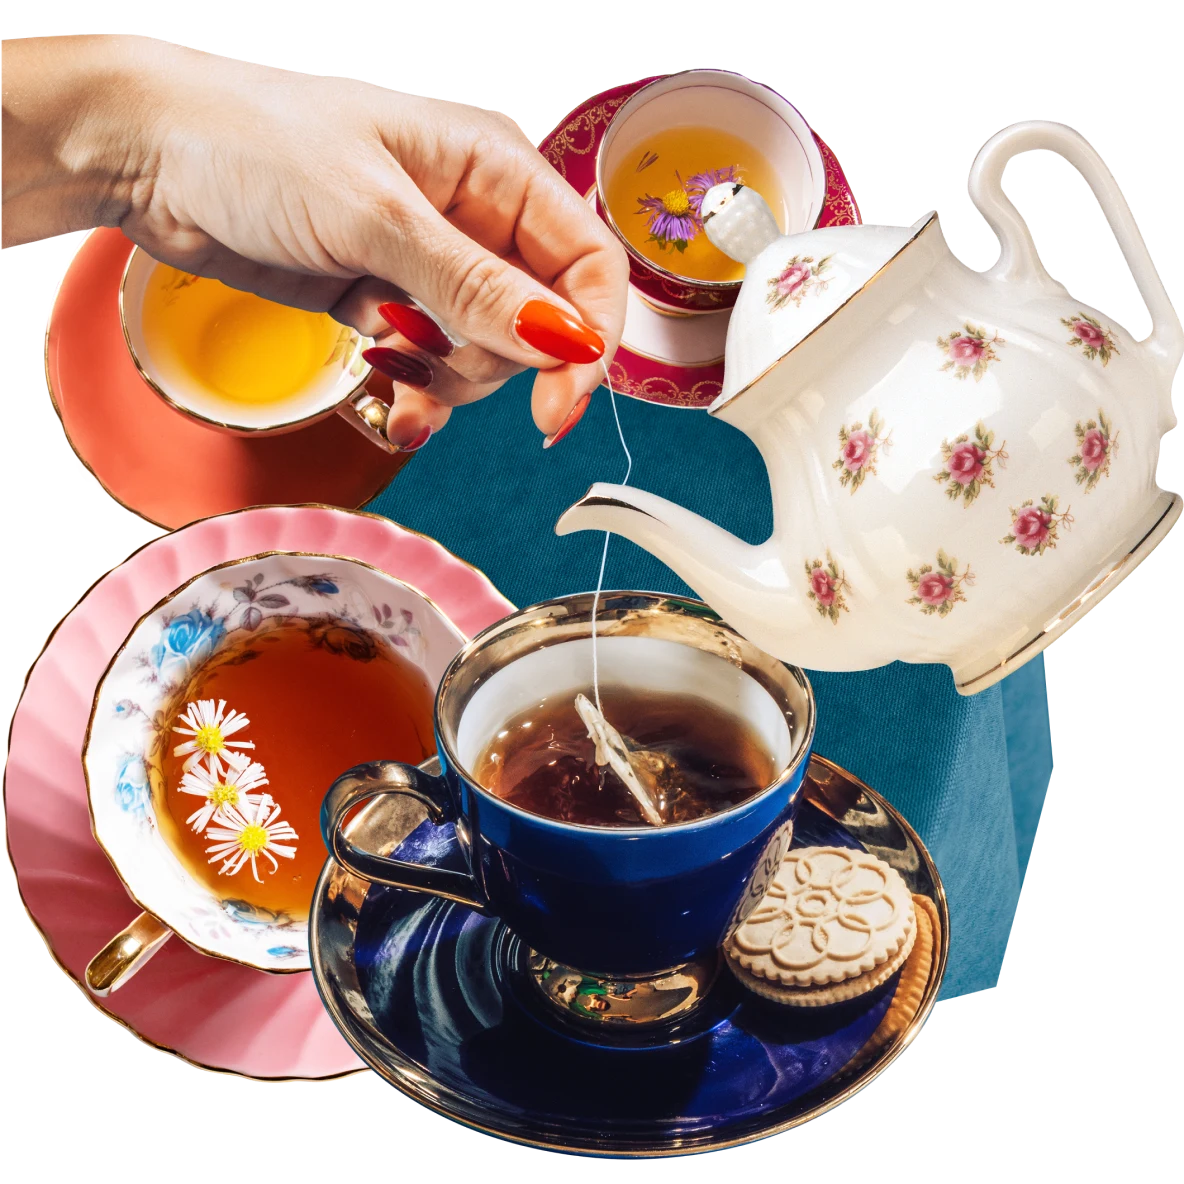 Colagem de xícaras cheias de chá em tons escuro e âmbar. Bule branco com flores cor-de-rosa inclinado em direção à xícara. Mão de pessoa de pele branca mergulhando um saquinho de chá em uma xícara azul-escuro cheia de chá.